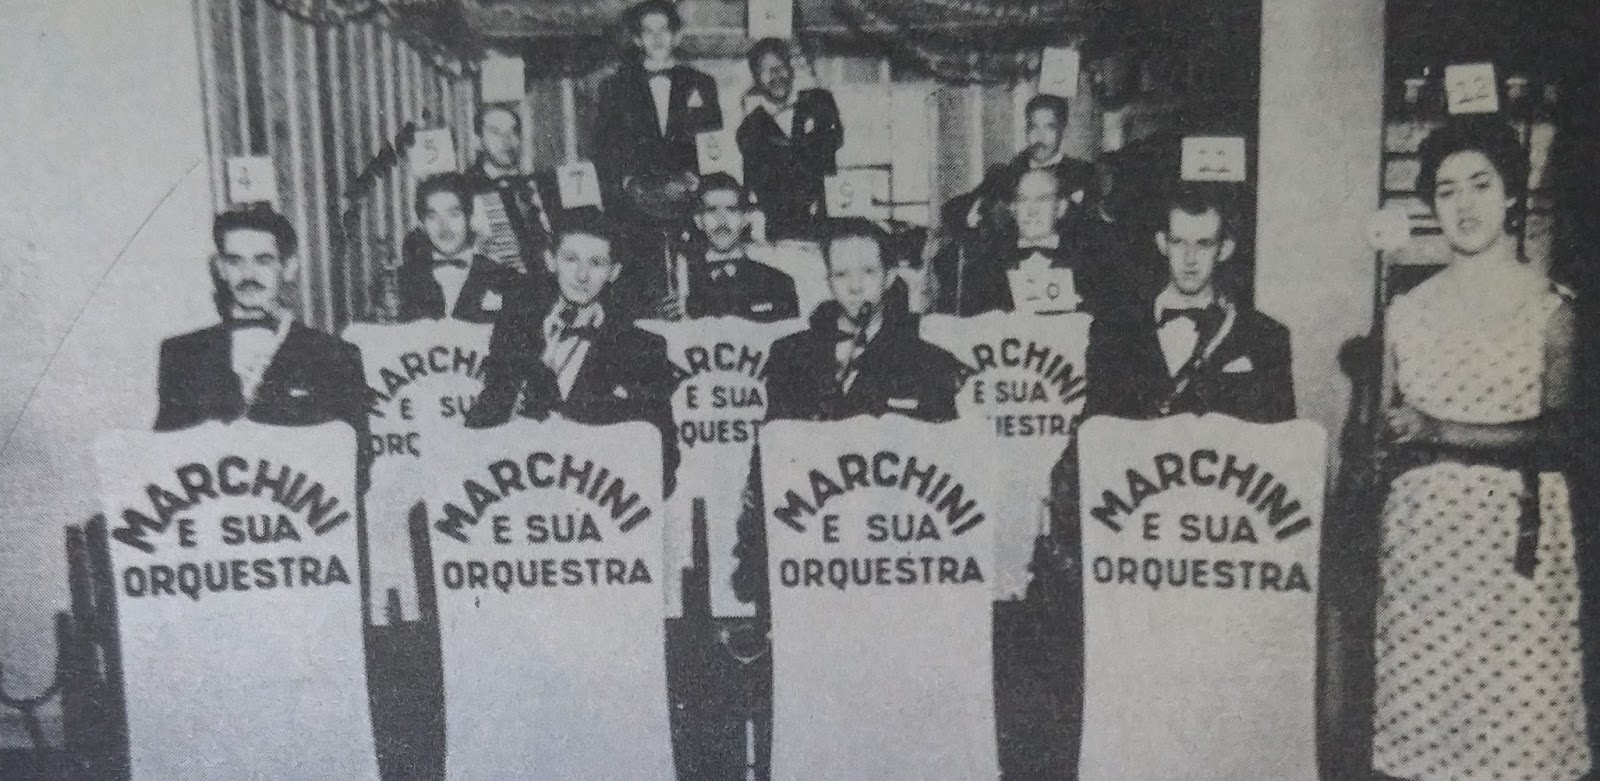 Marchini e sua orquestra - 1958